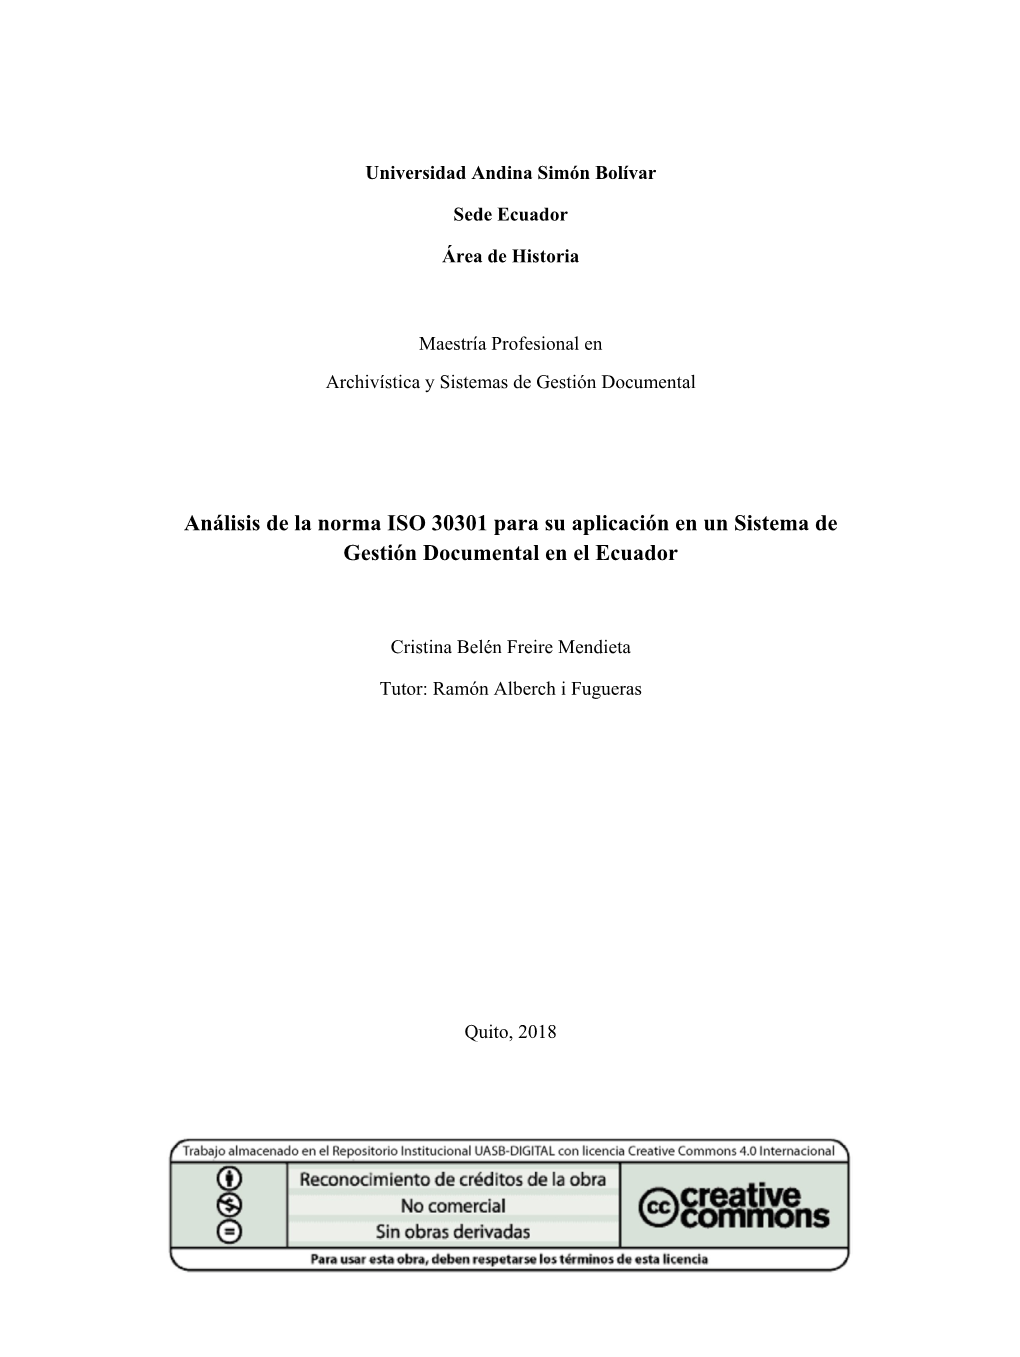 Análisis De La Norma ISO 30301 Para Su Aplicación En Un Sistema De Gestión Documental En El Ecuador